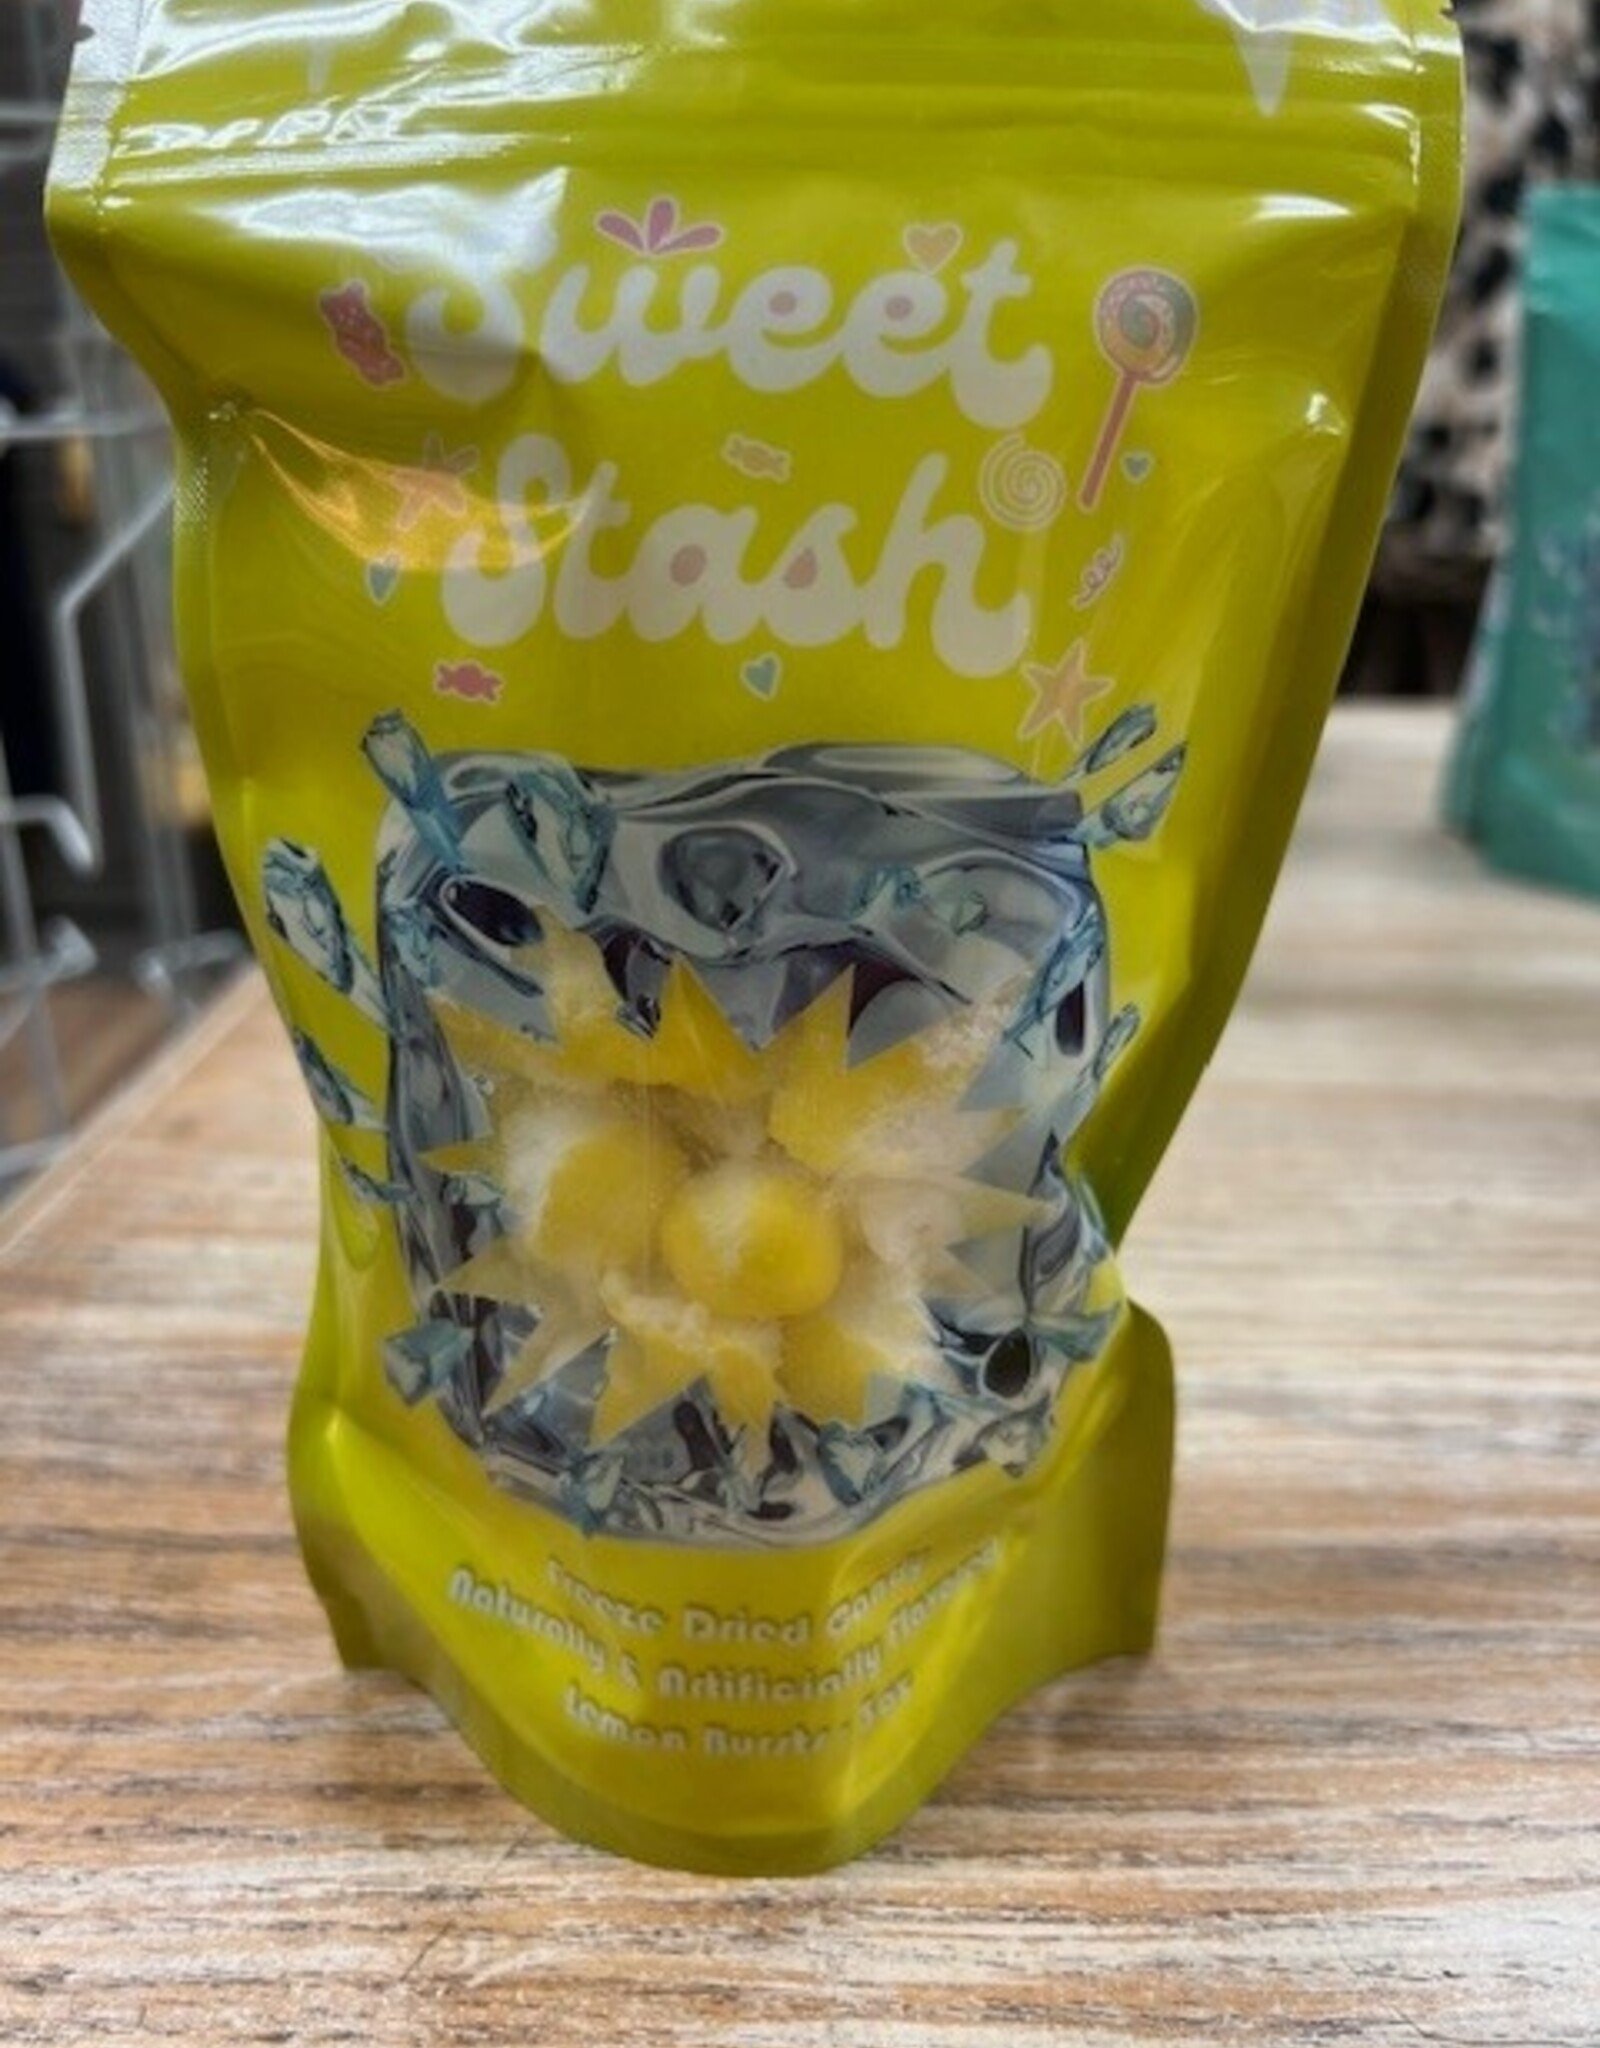 Candy Freeze Dried Candy- Lemon Bursts (Lemonheads)